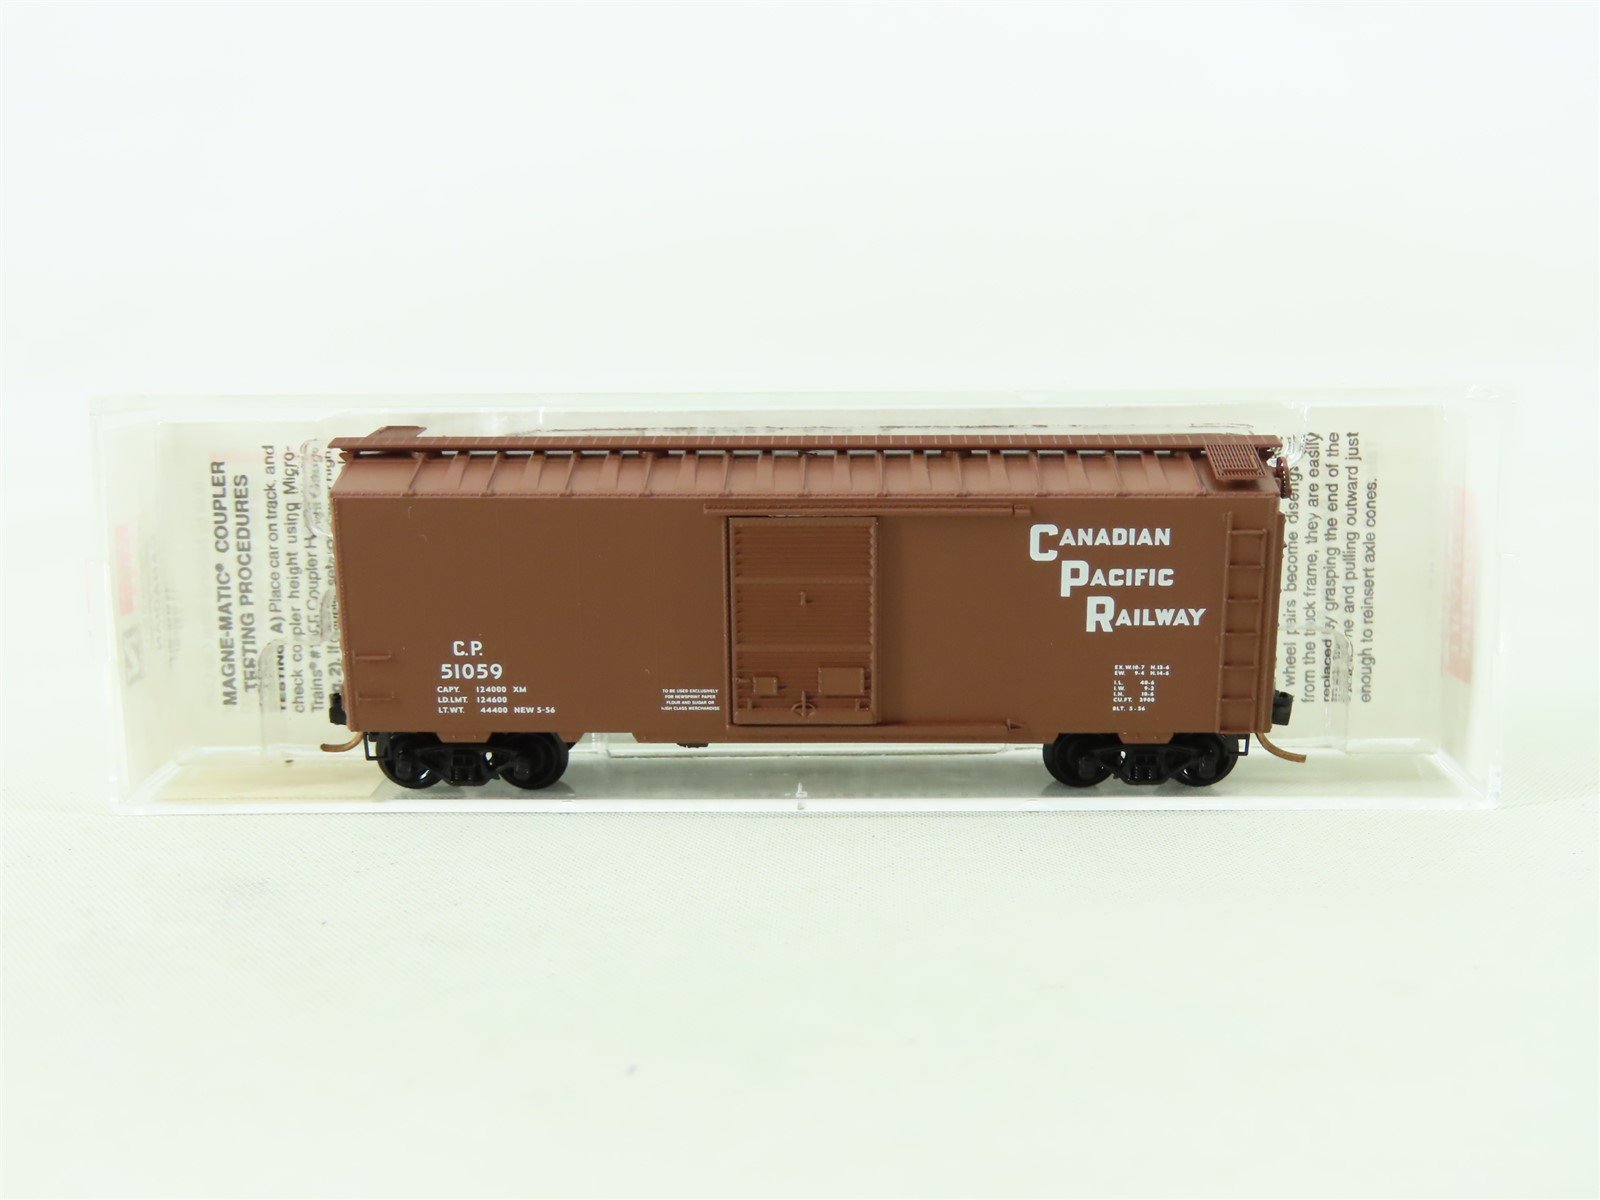 N Scale Micro-Trains MTL 20436/2 CP Canadian Pacific Railway 40' Box Car #51059